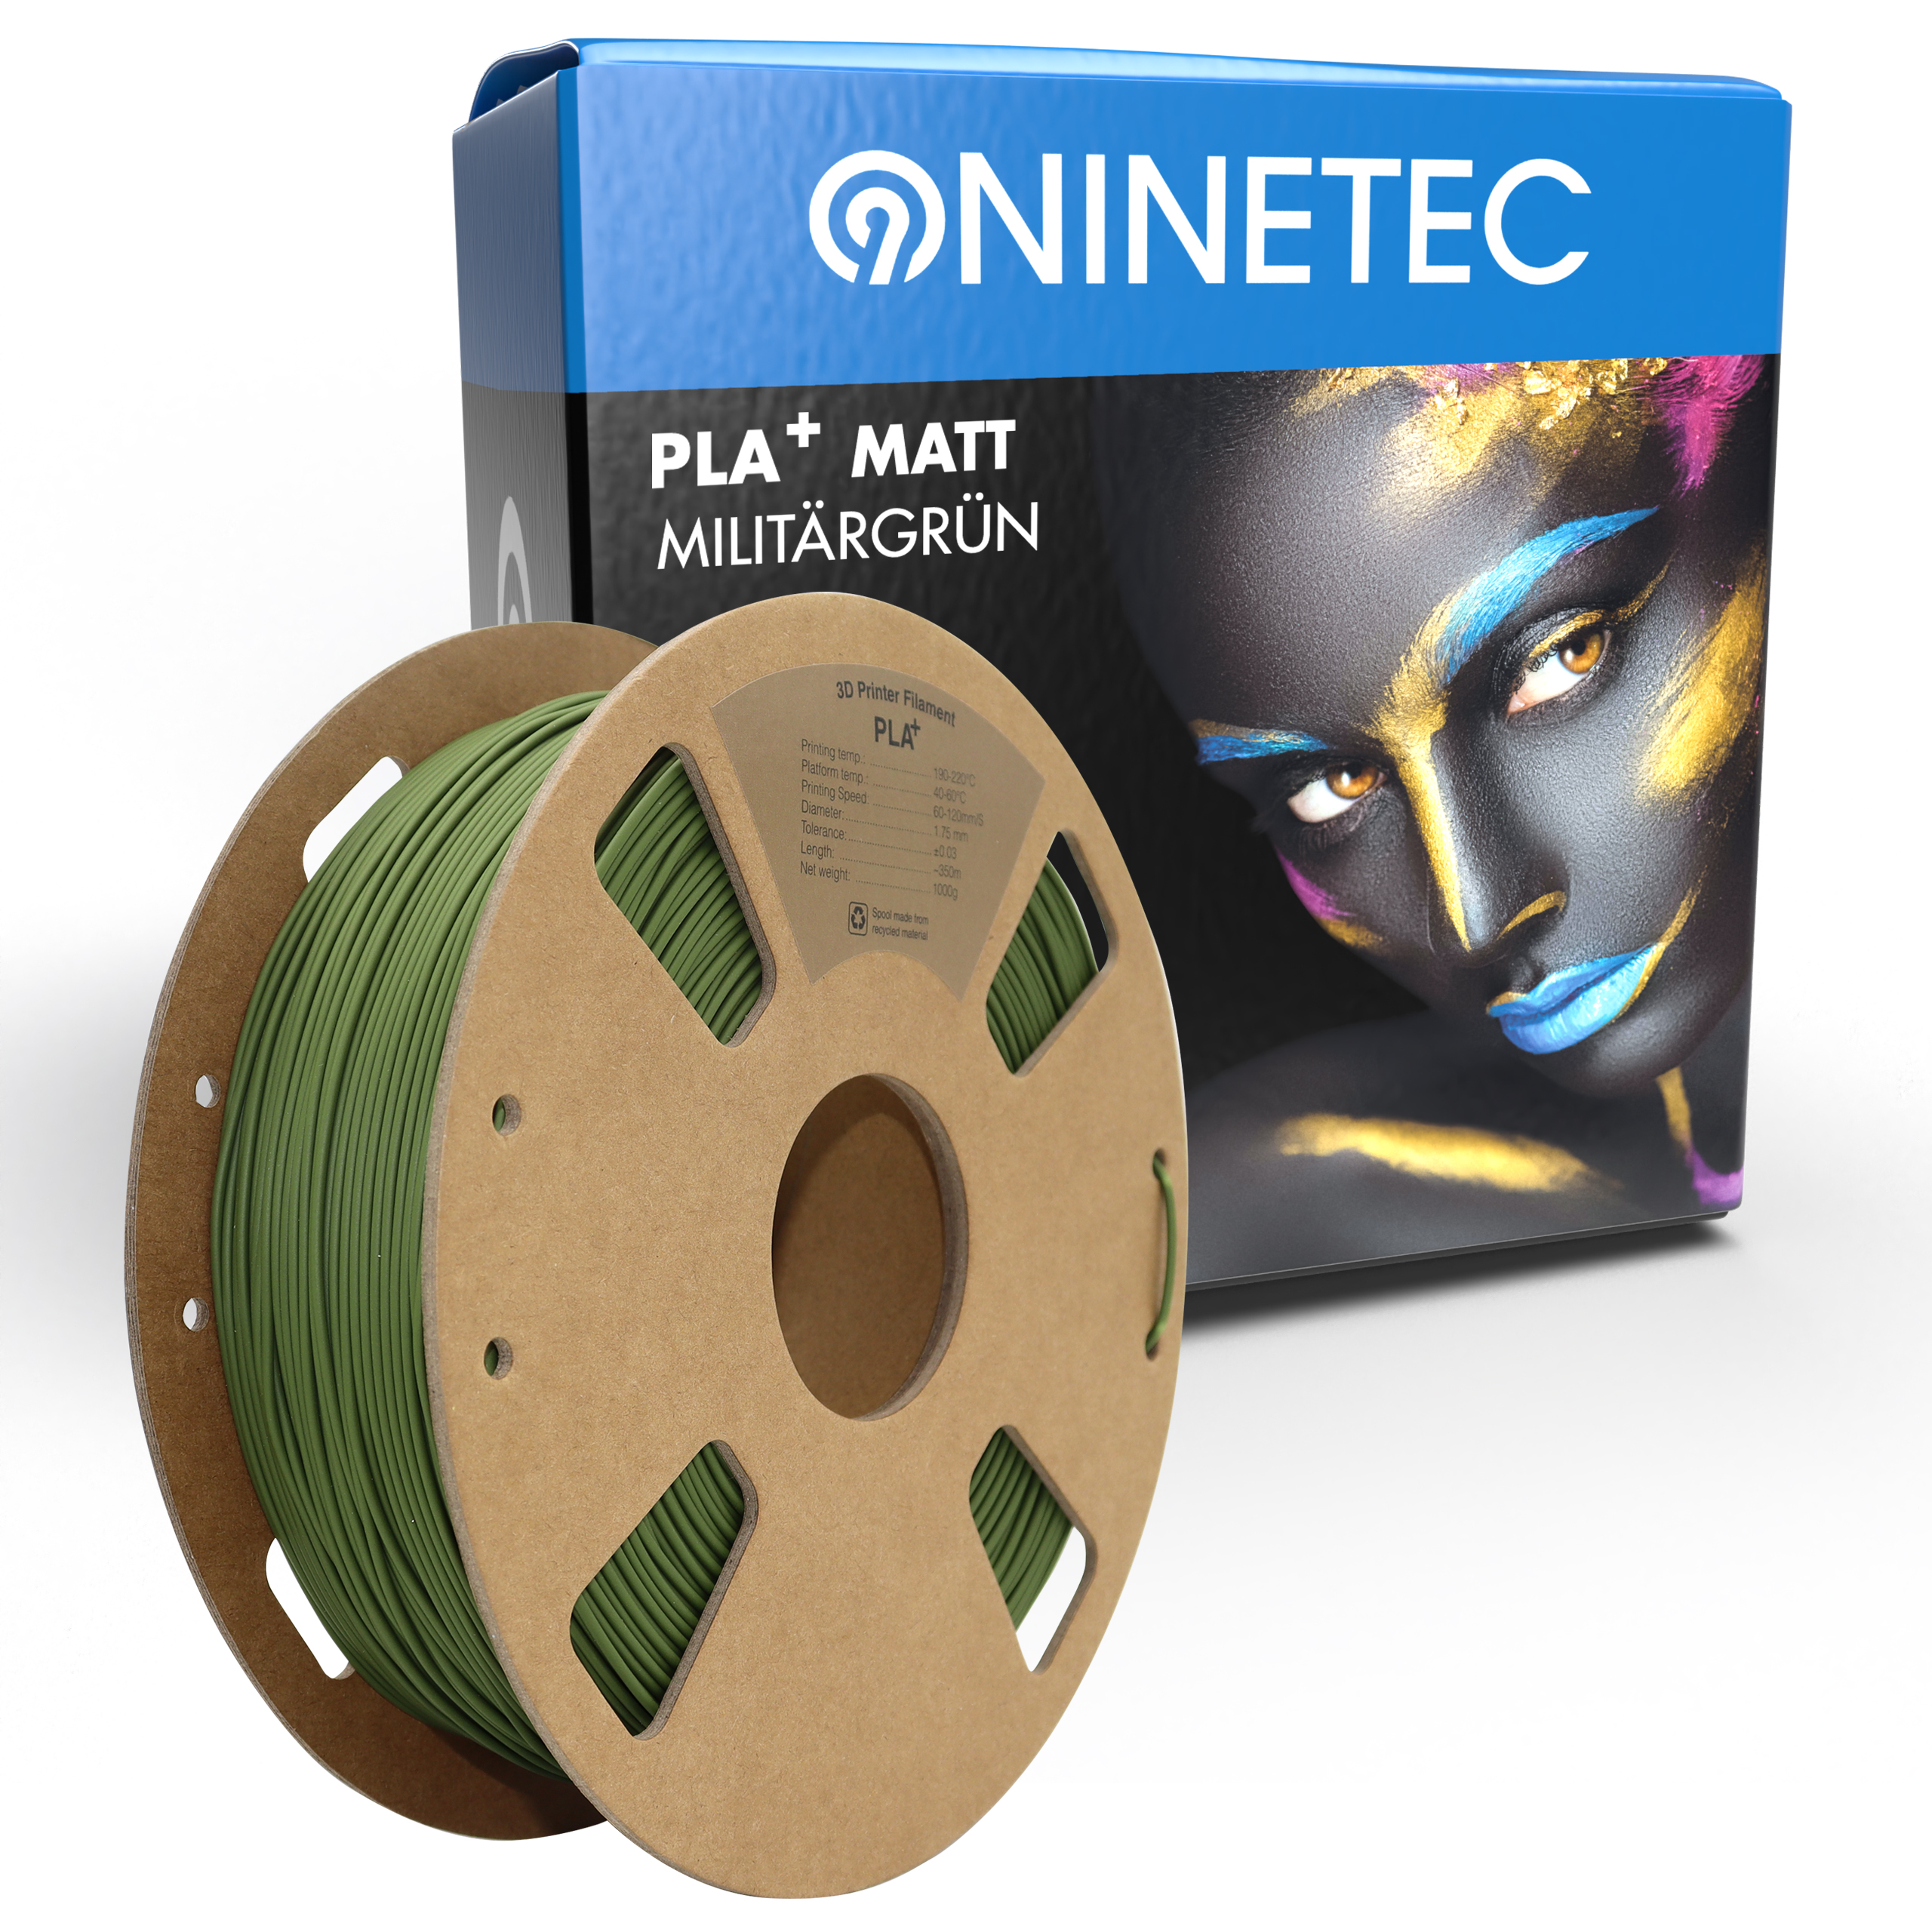 NINETEC PLA+ Matt Militärgrün Filament